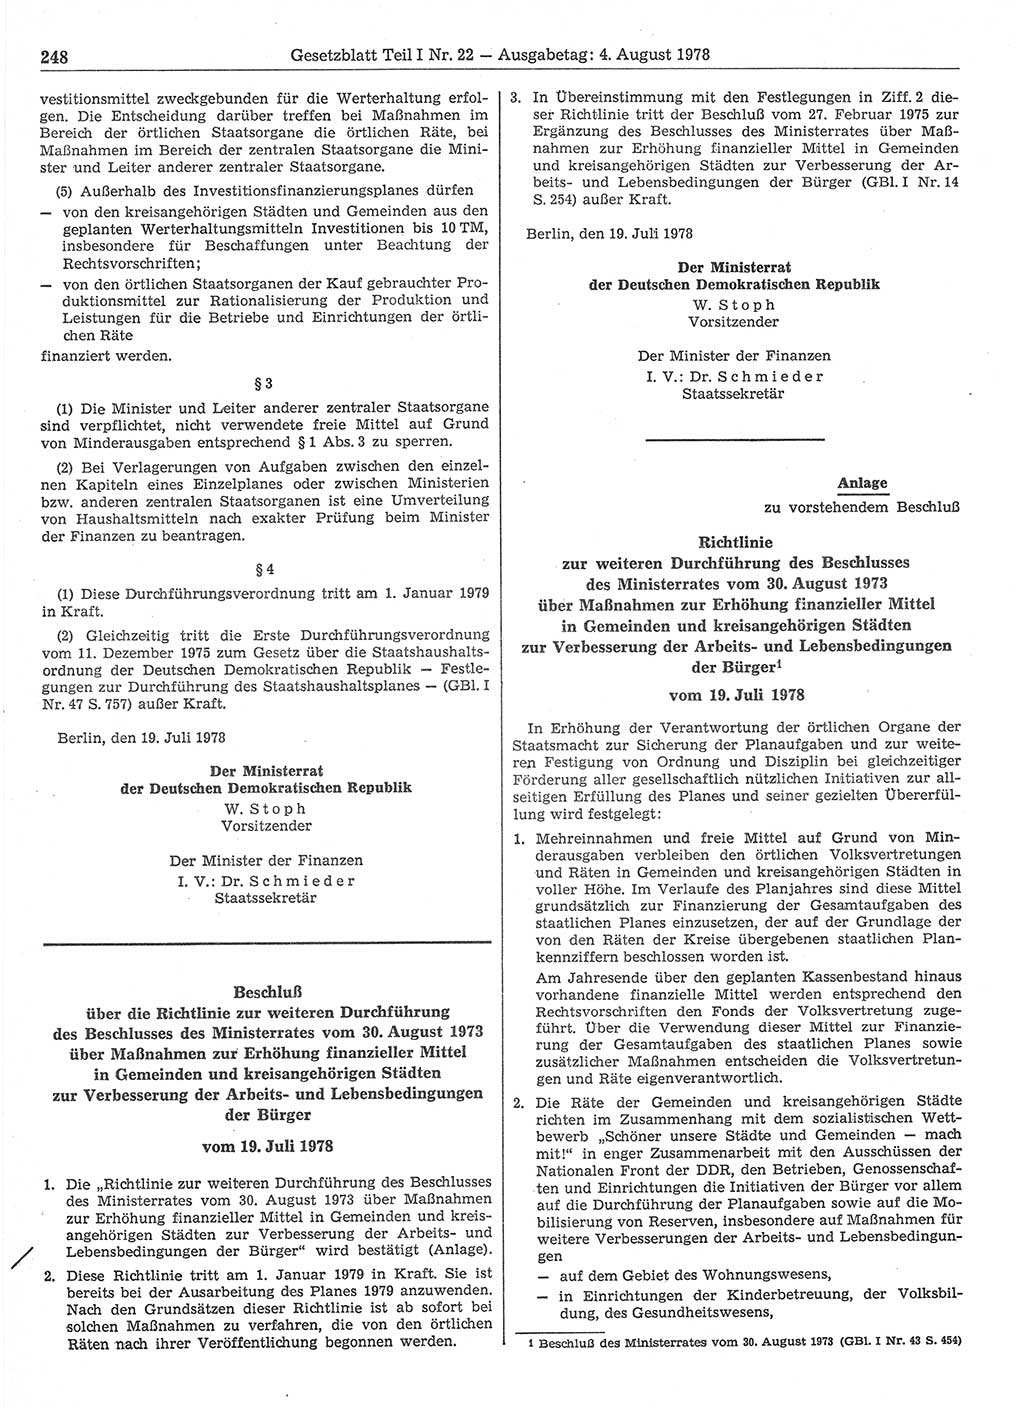 Gesetzblatt (GBl.) der Deutschen Demokratischen Republik (DDR) Teil Ⅰ 1978, Seite 248 (GBl. DDR Ⅰ 1978, S. 248)